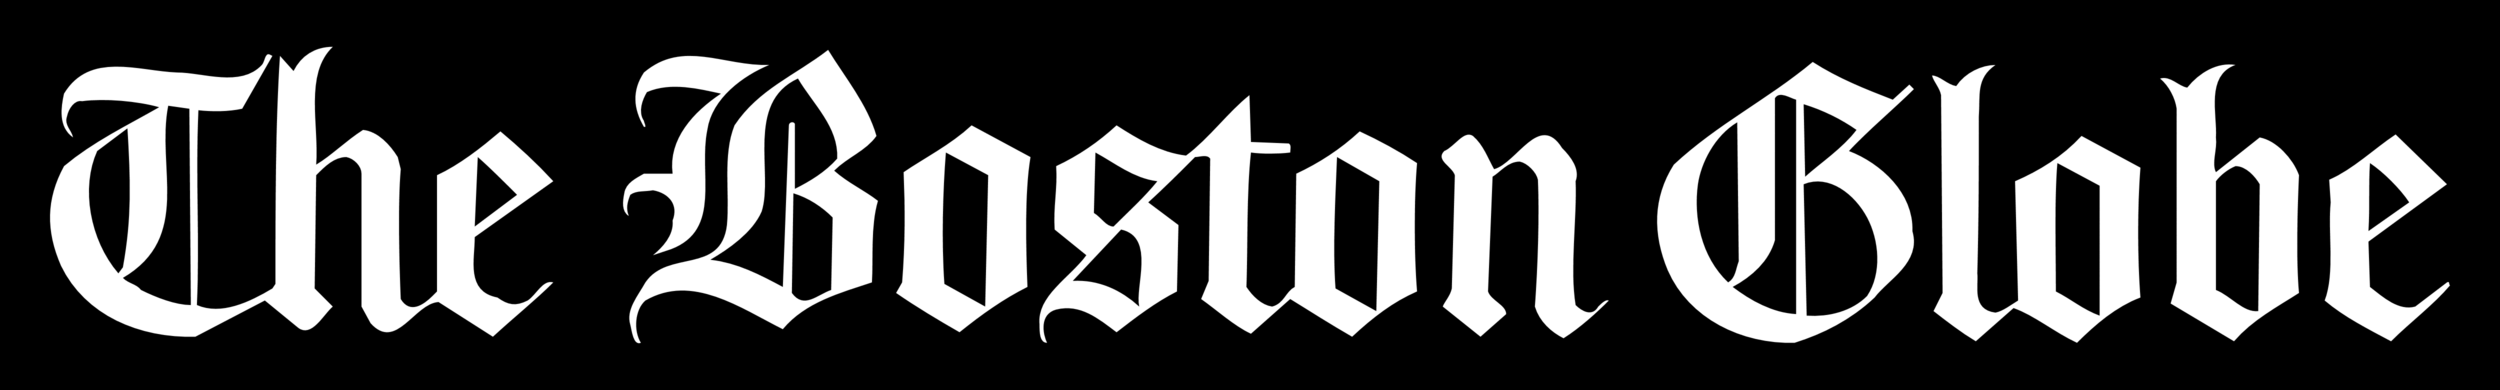 The_Boston_Globe_logo.png